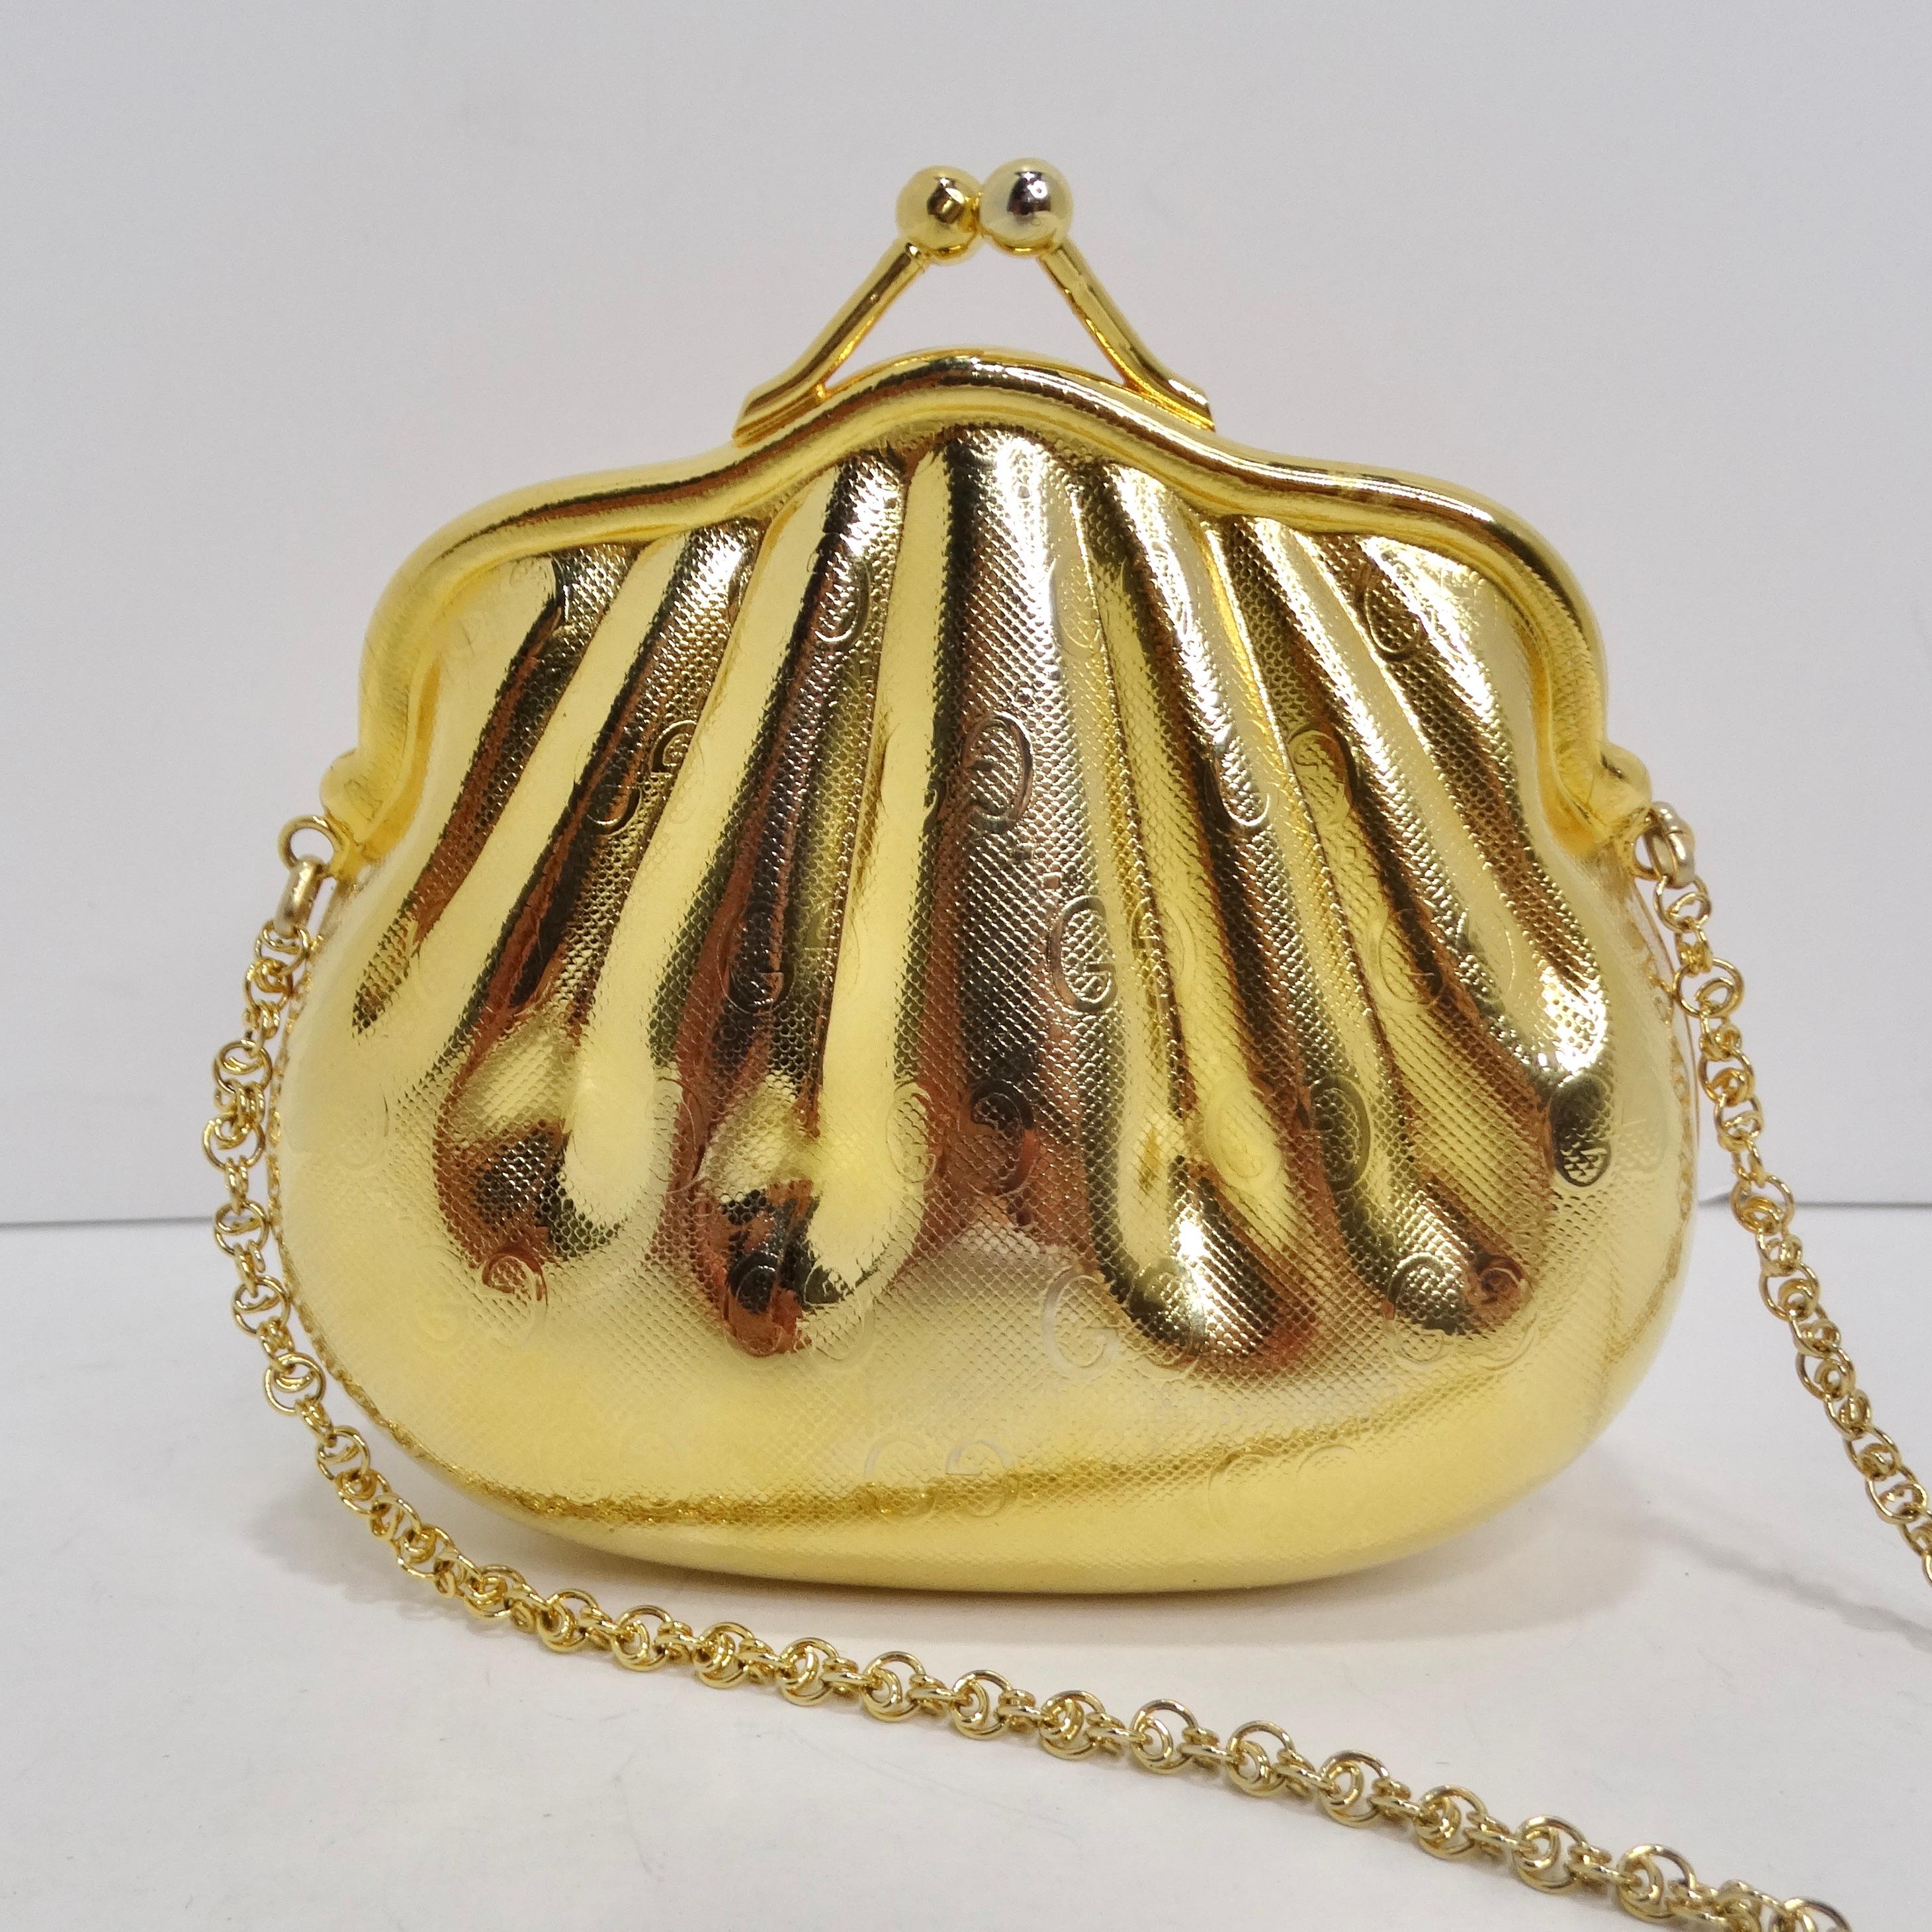 Treten Sie näher, liebe Modekennerinnen und -kenner! Lassen Sie sich von dieser zeitlosen Schönheit verzaubern - der goldfarbenen Metallmuschel-Minaudière-Abendtasche von Gucci aus den 1980er Jahren. Dieses Schmuckstück im Vintage-Stil ist nicht nur